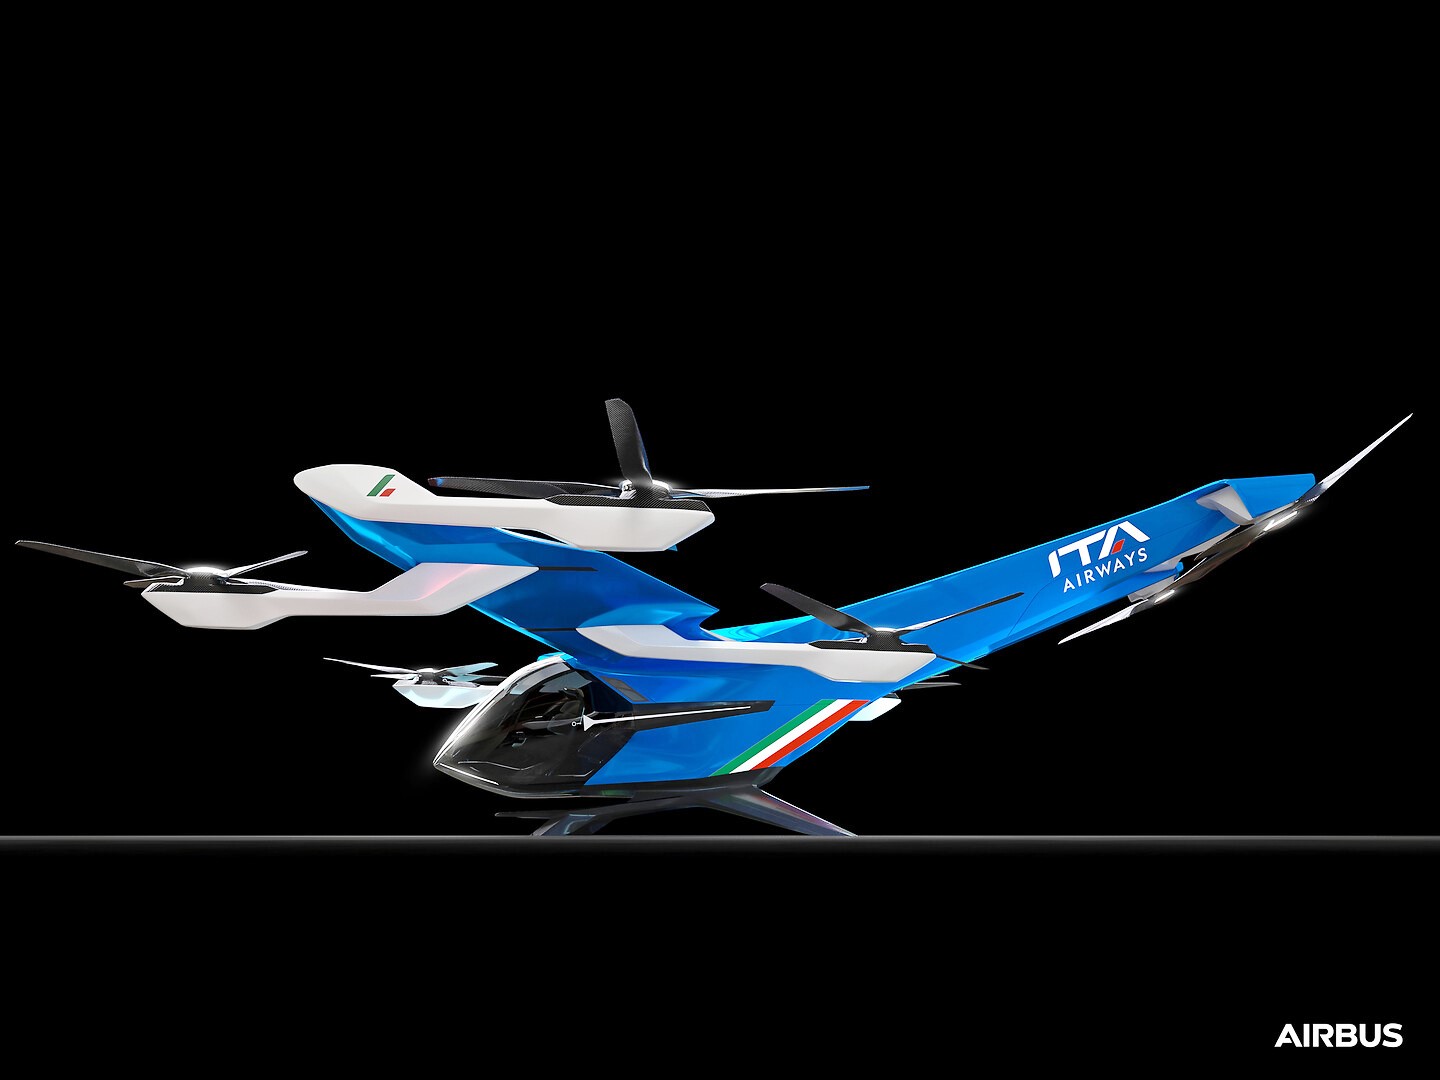 ITA Airways - Airbus Drone